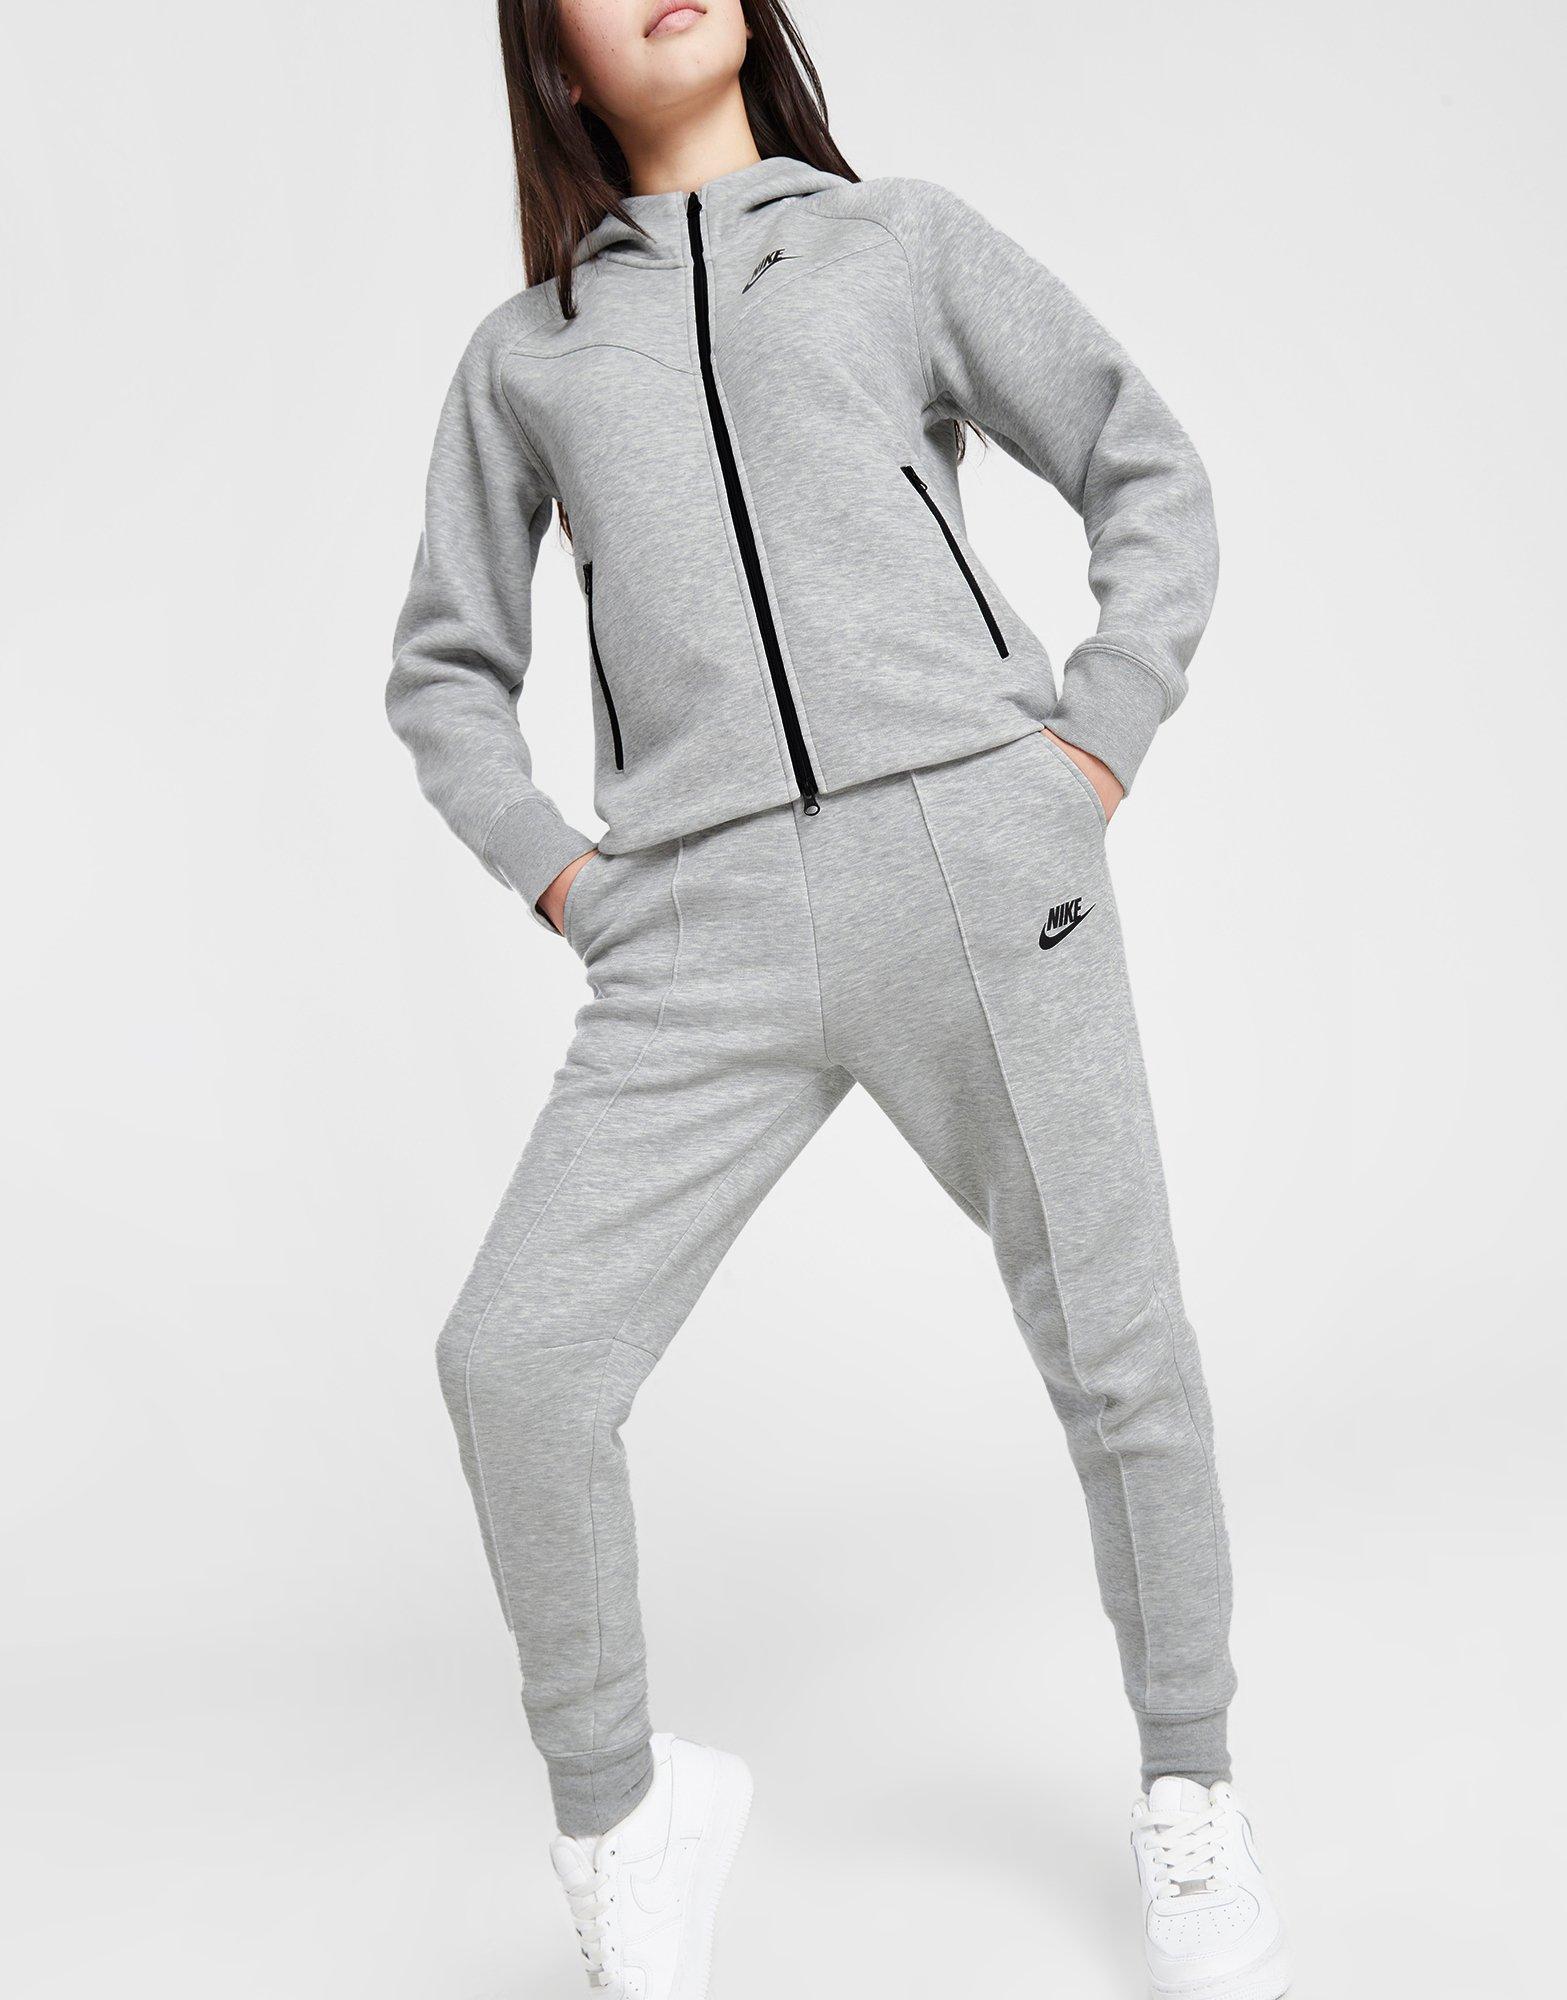 Nike Pantalon de jogging Sportswear Tech Fleece Homme Noir- JD Sports France